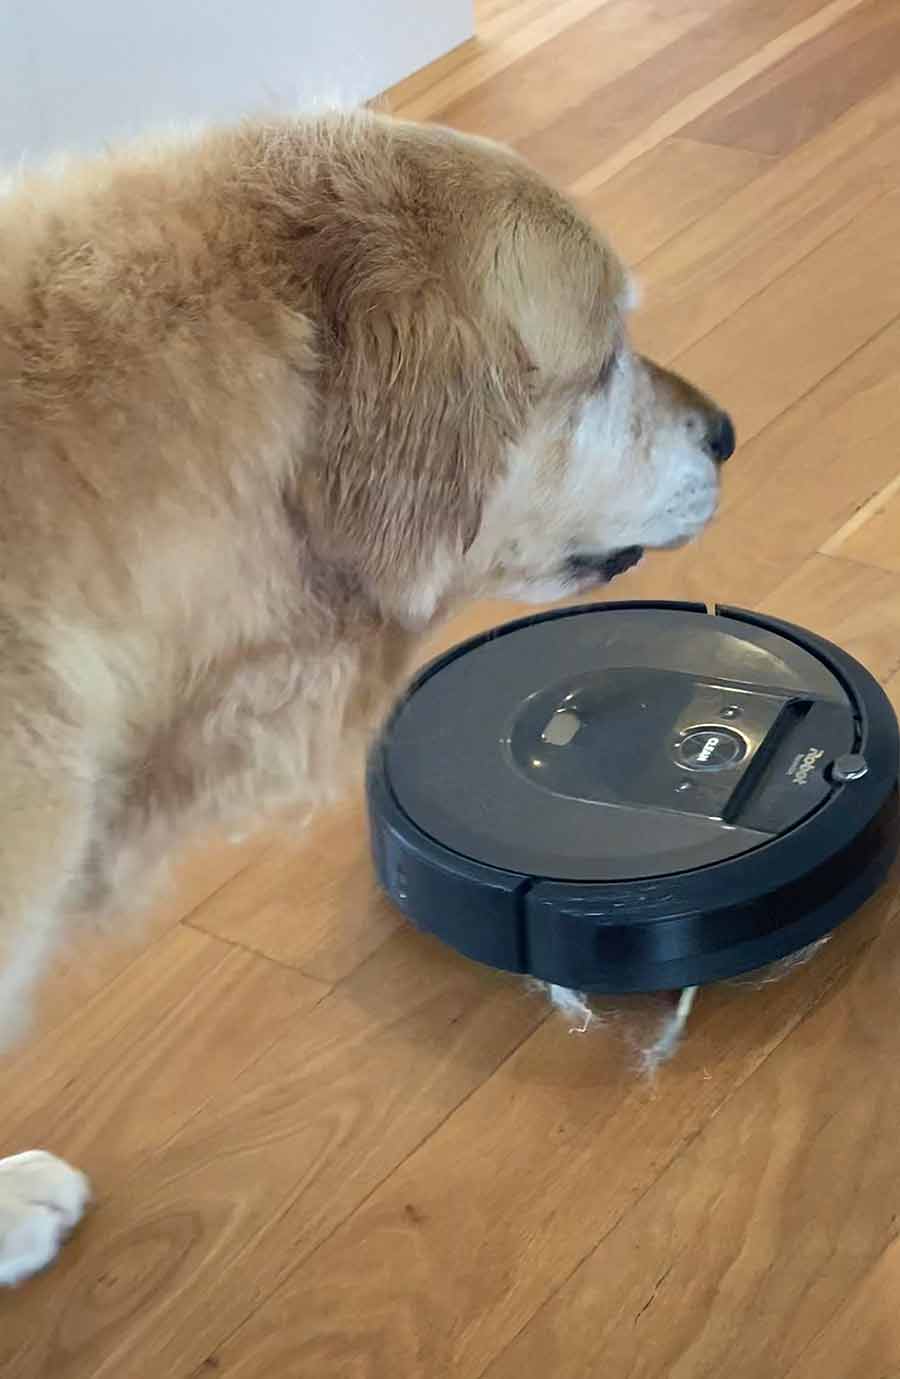 Dozer with Roomba